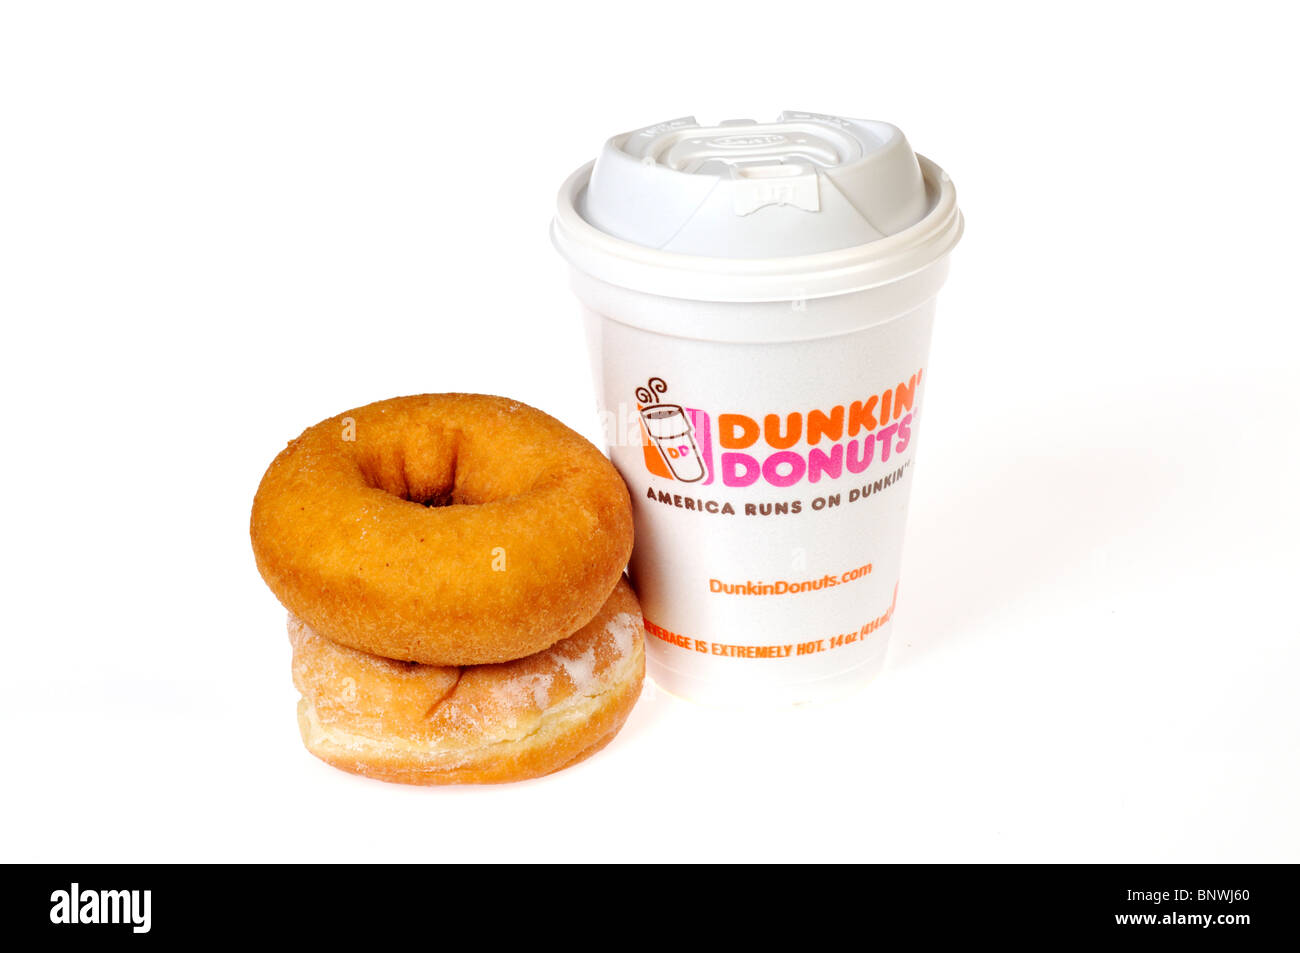 Un bain de styromousse de café Dunkin Donuts avec langage et jelly -rempli donuts empilés sur un fond blanc. Cut out Banque D'Images